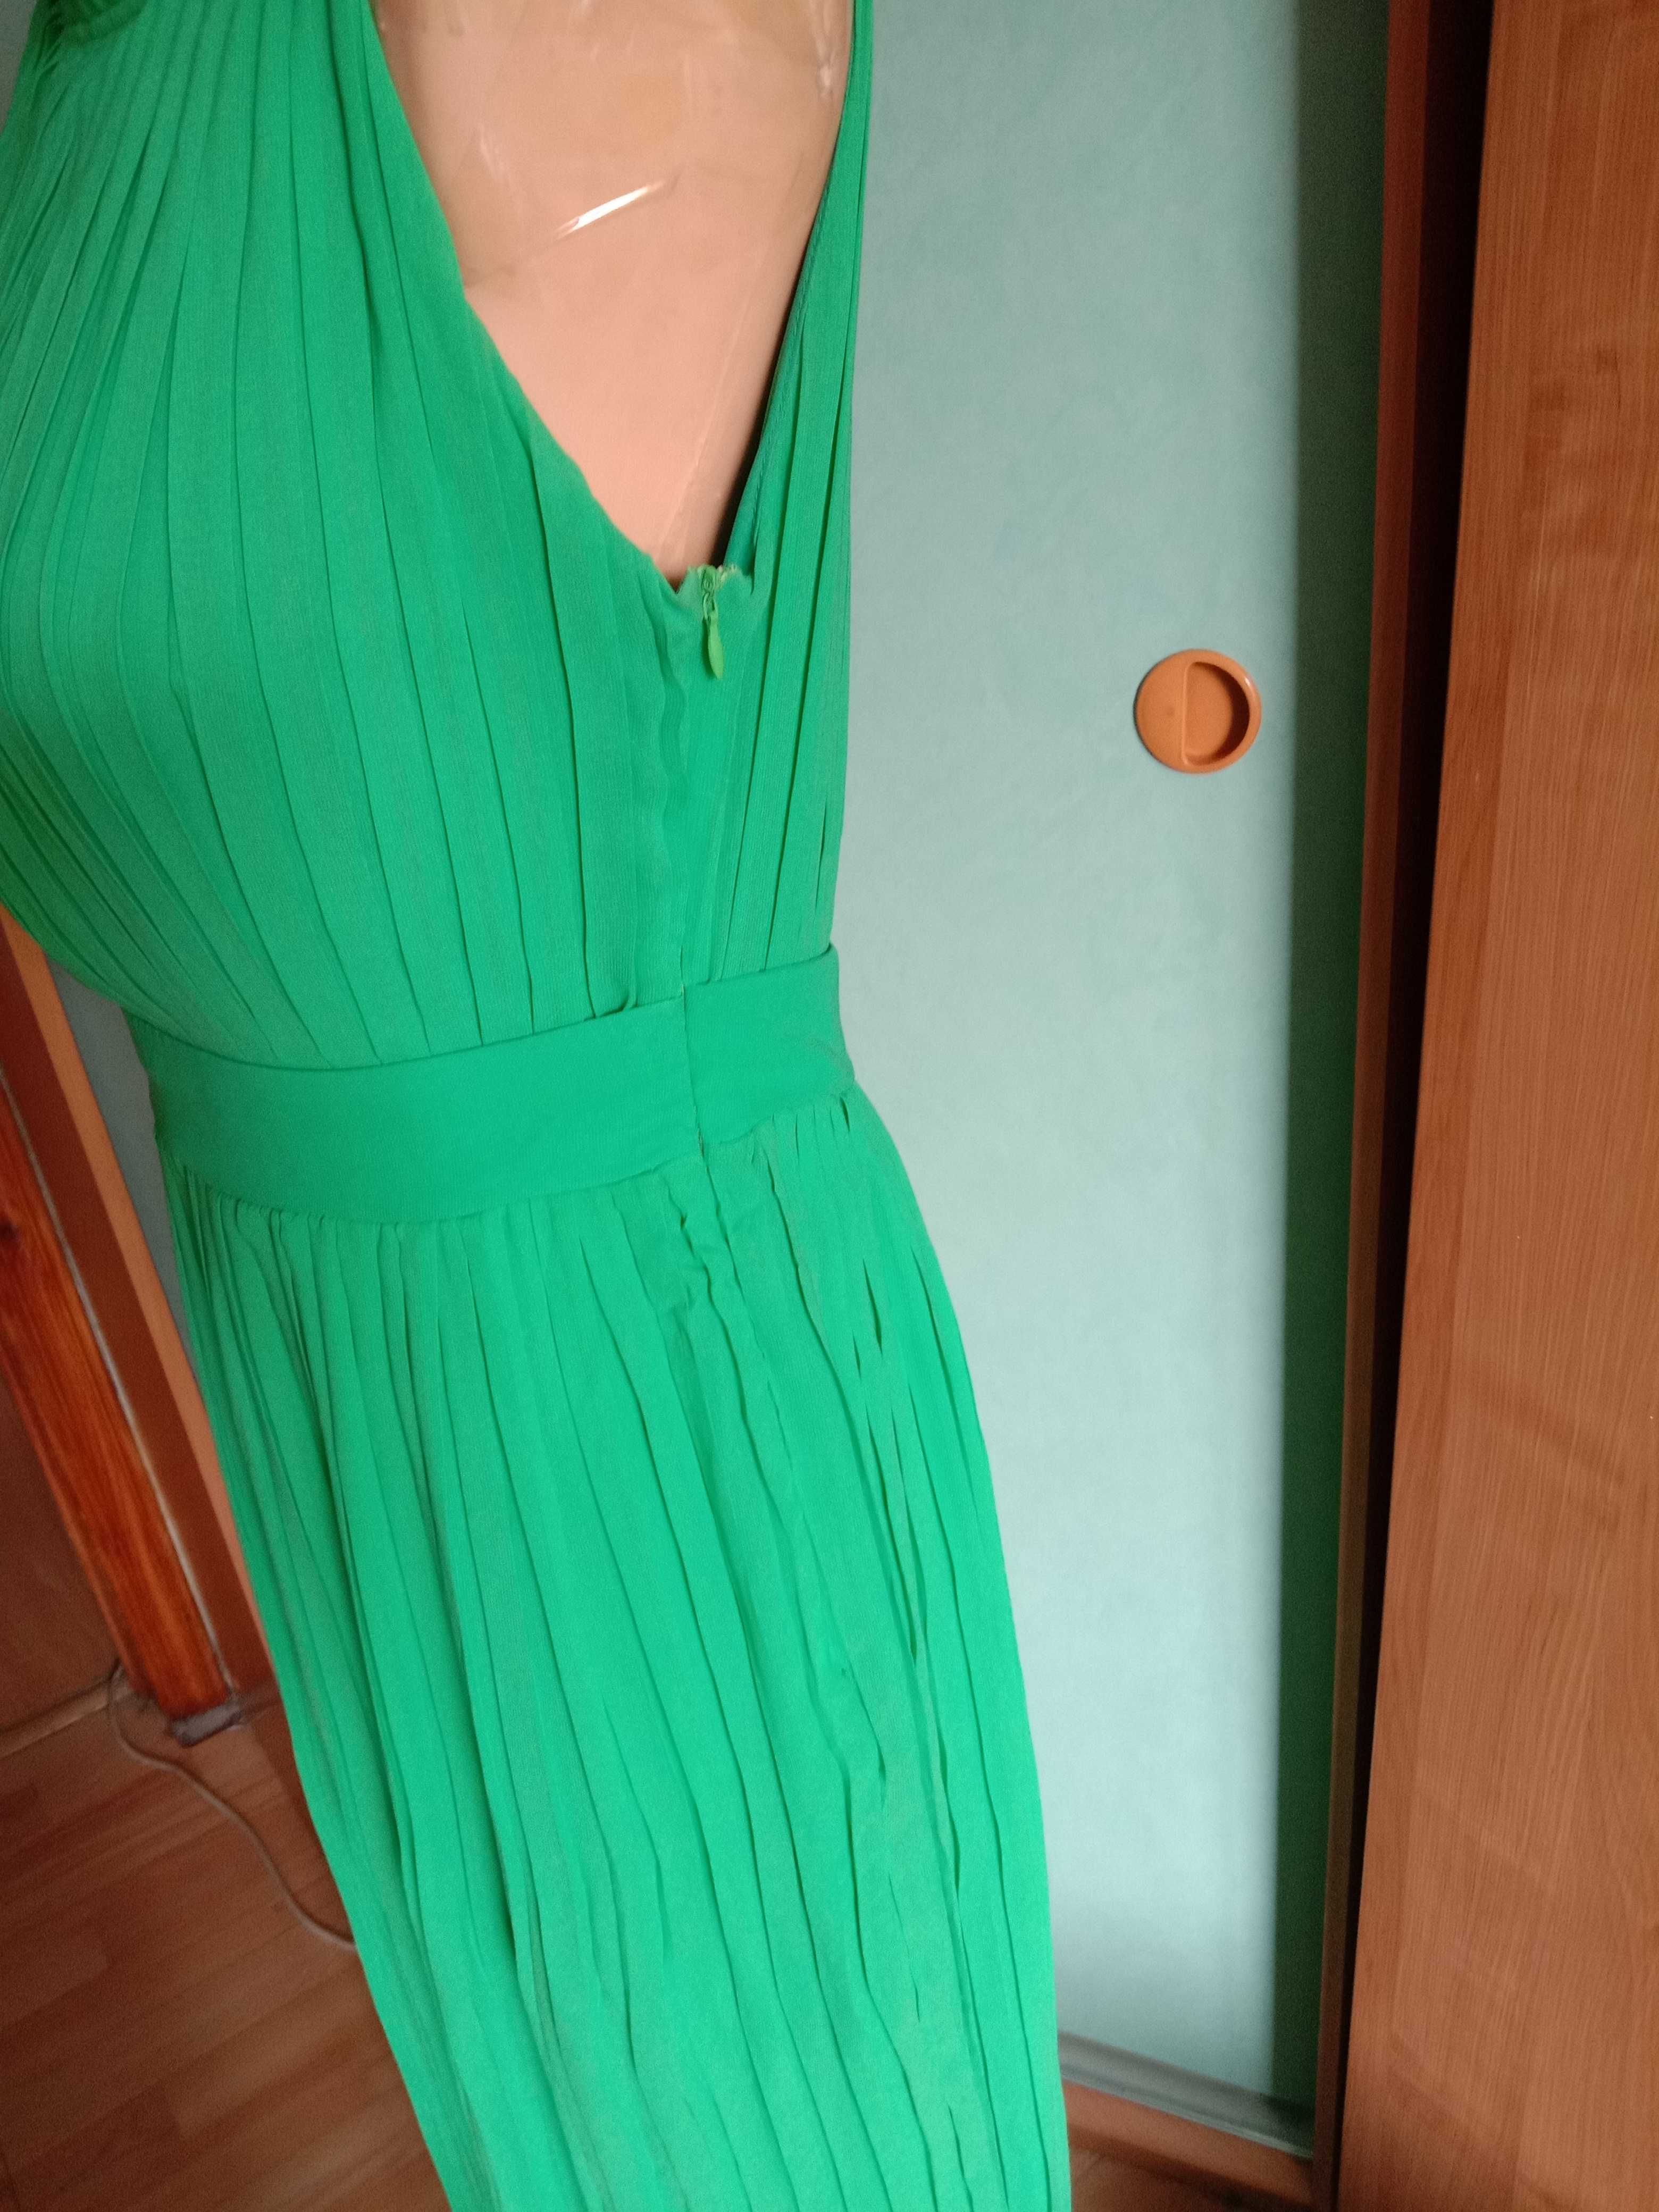 Летнее зеленое платье